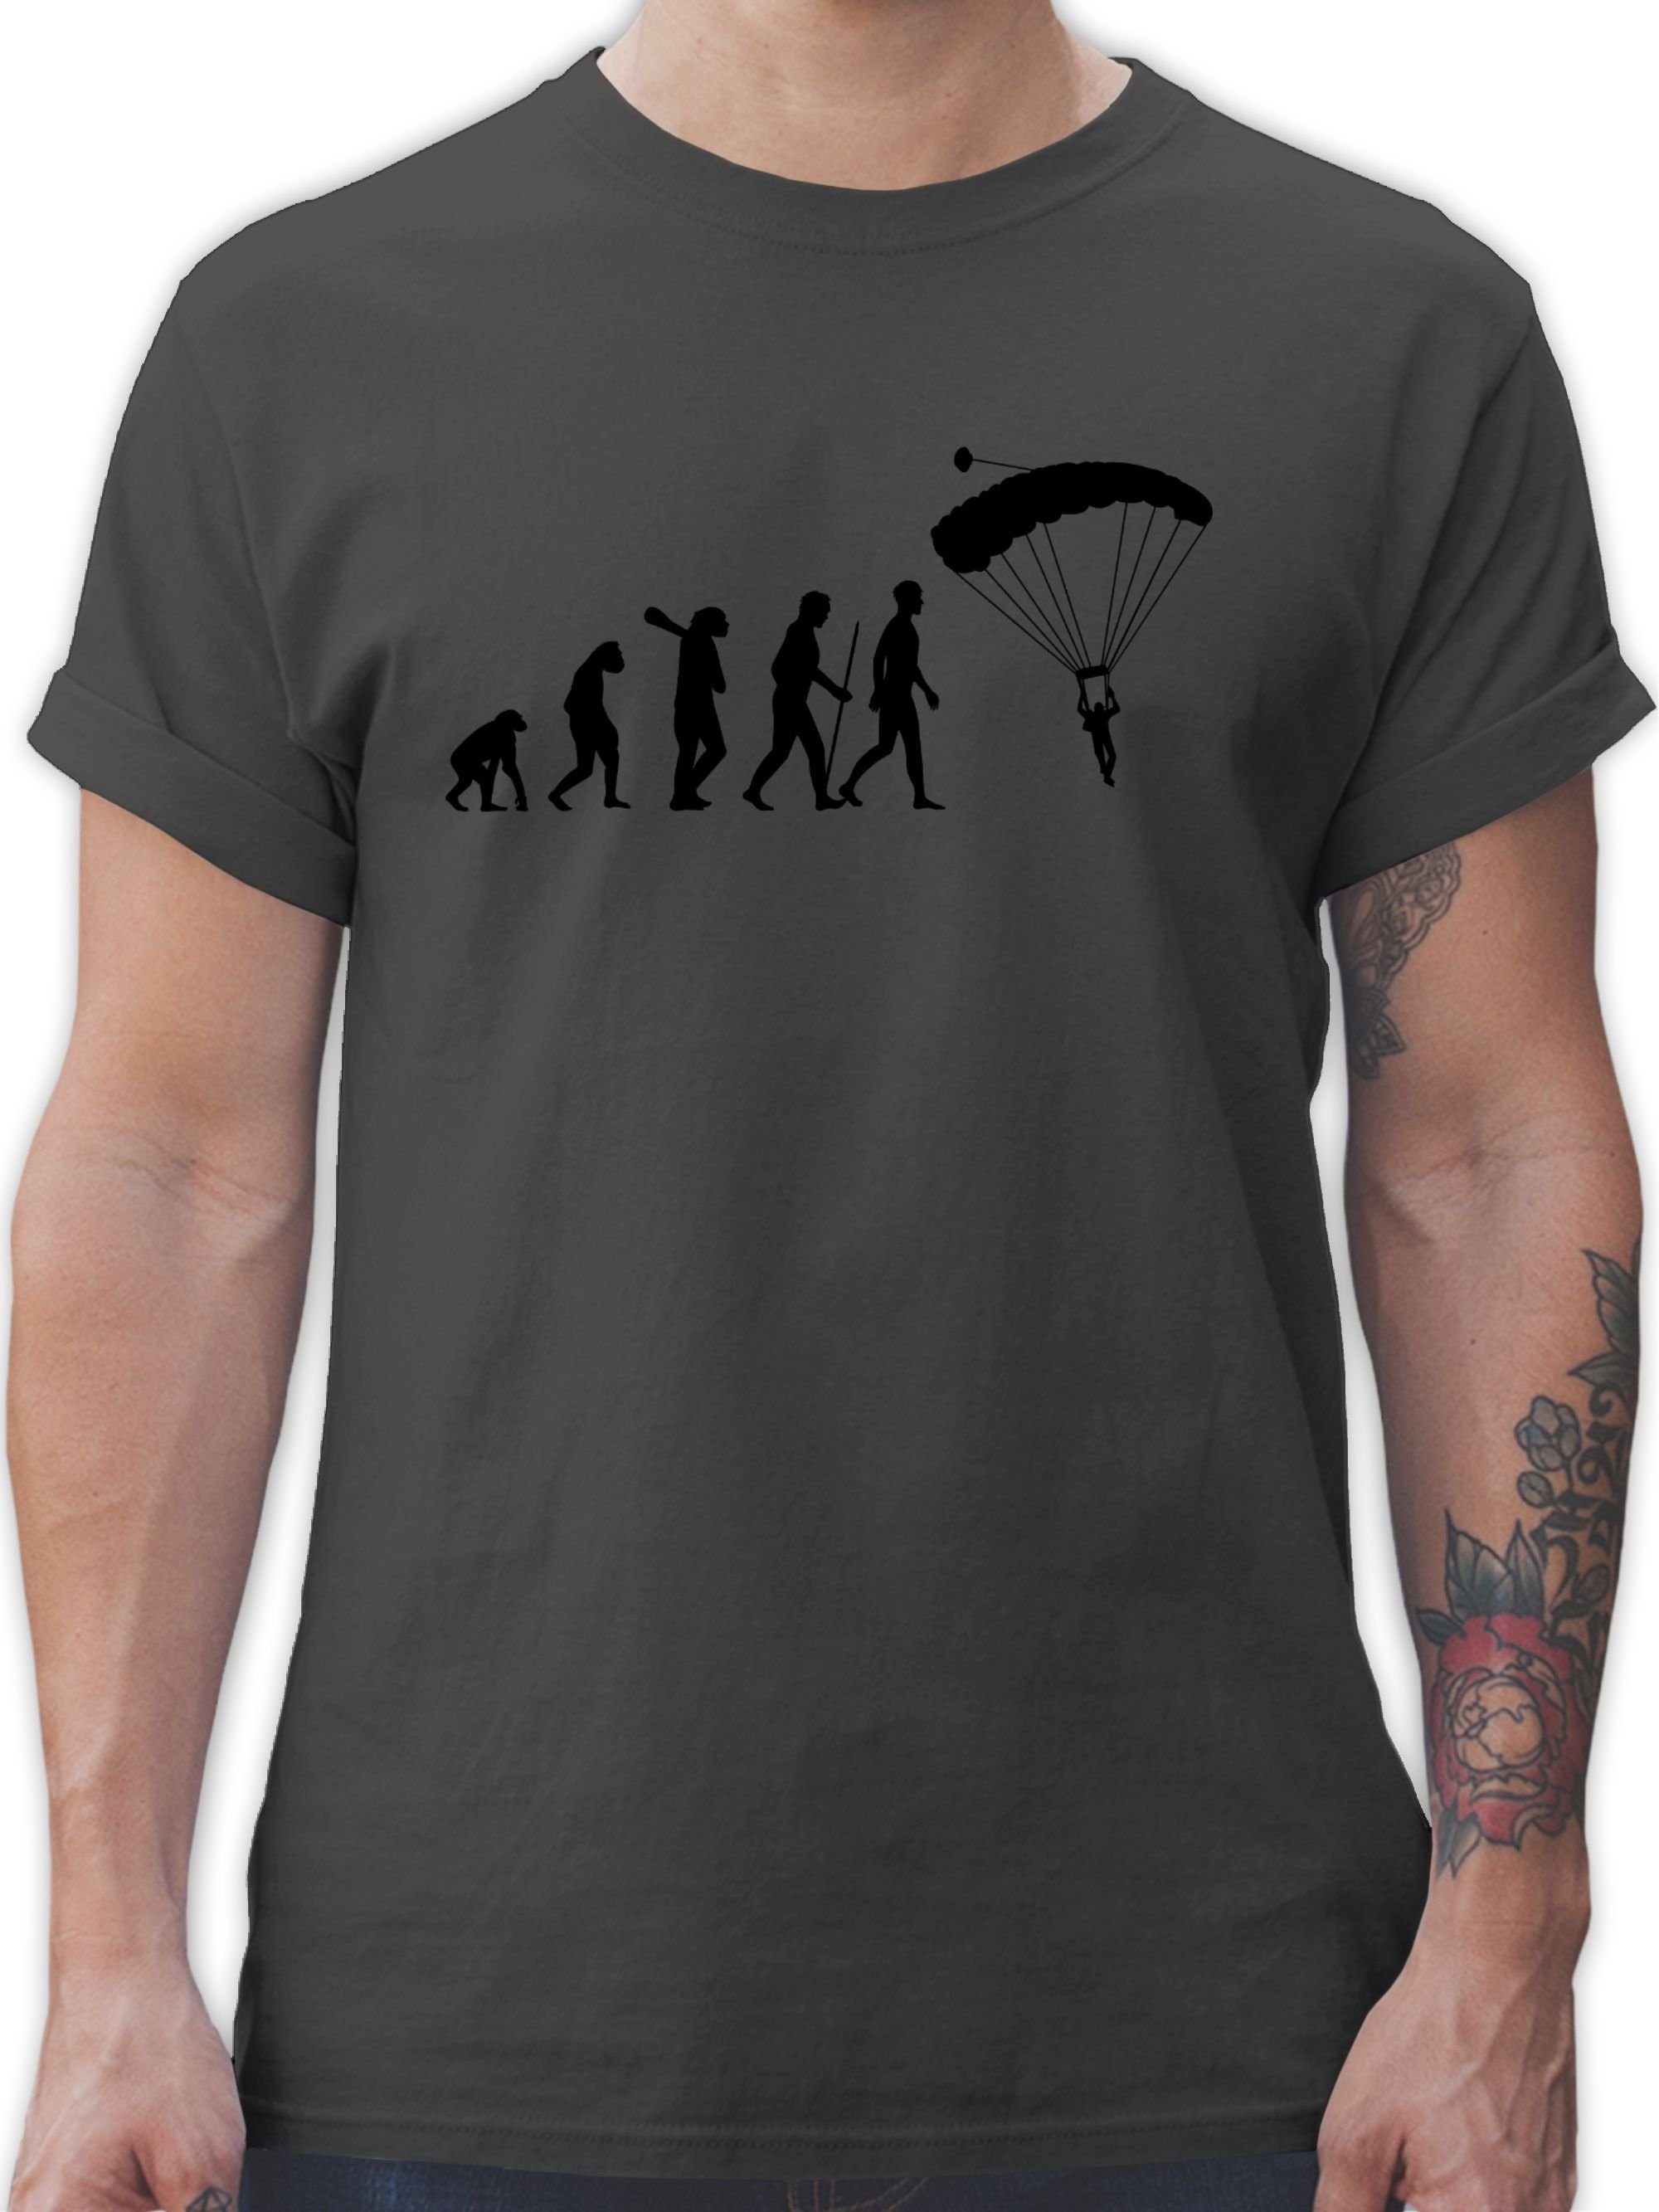 Shirtracer T-Shirt Fallschirmspringen Evolution - Evolution Outfit - Herren Premium T-Shirt fallschirmsprung tshirt evolution - fallschirm - gleitschirm 1 Dunkelgrau | T-Shirts